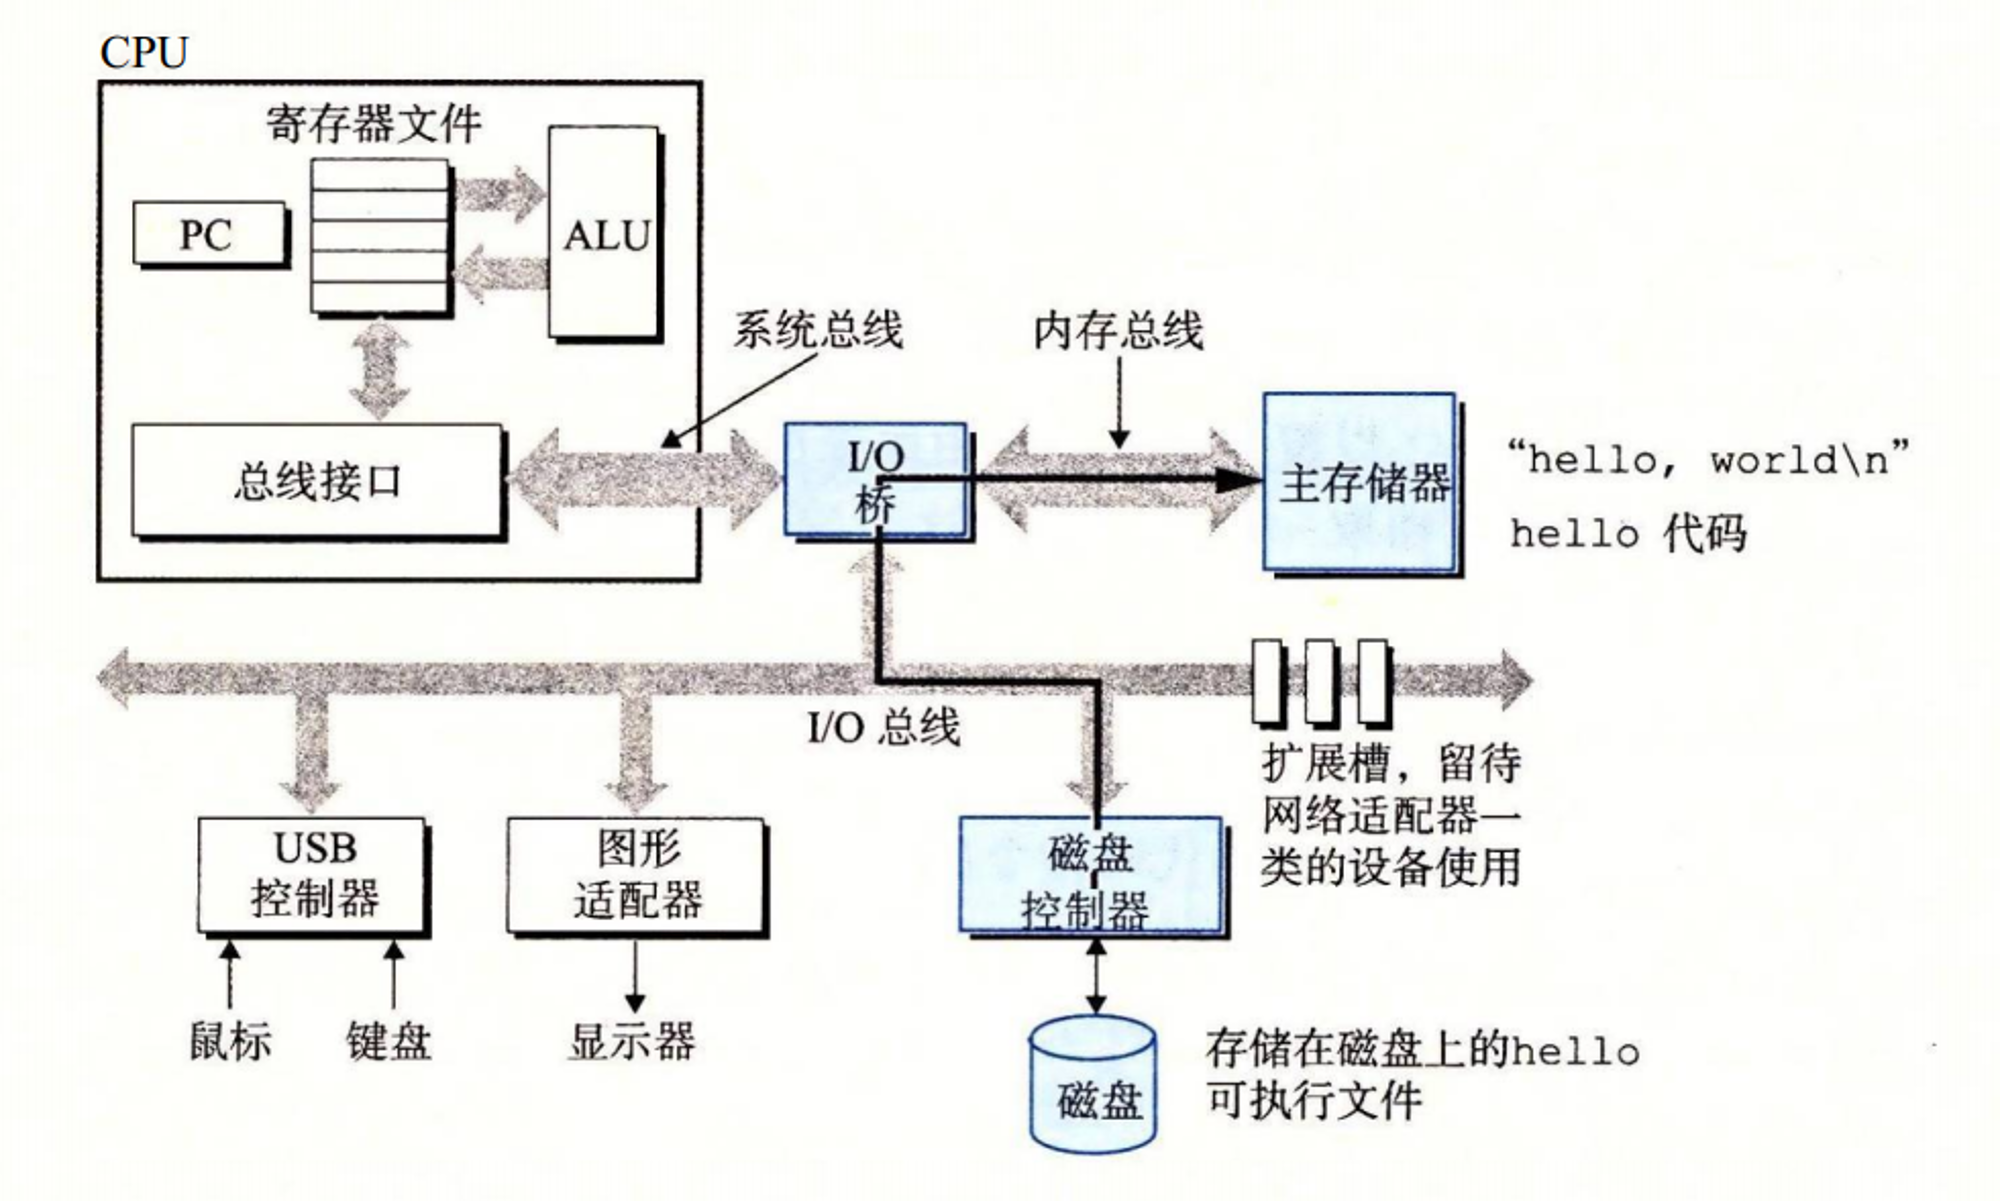 图1-6 从磁盘加载可执行文件到主存